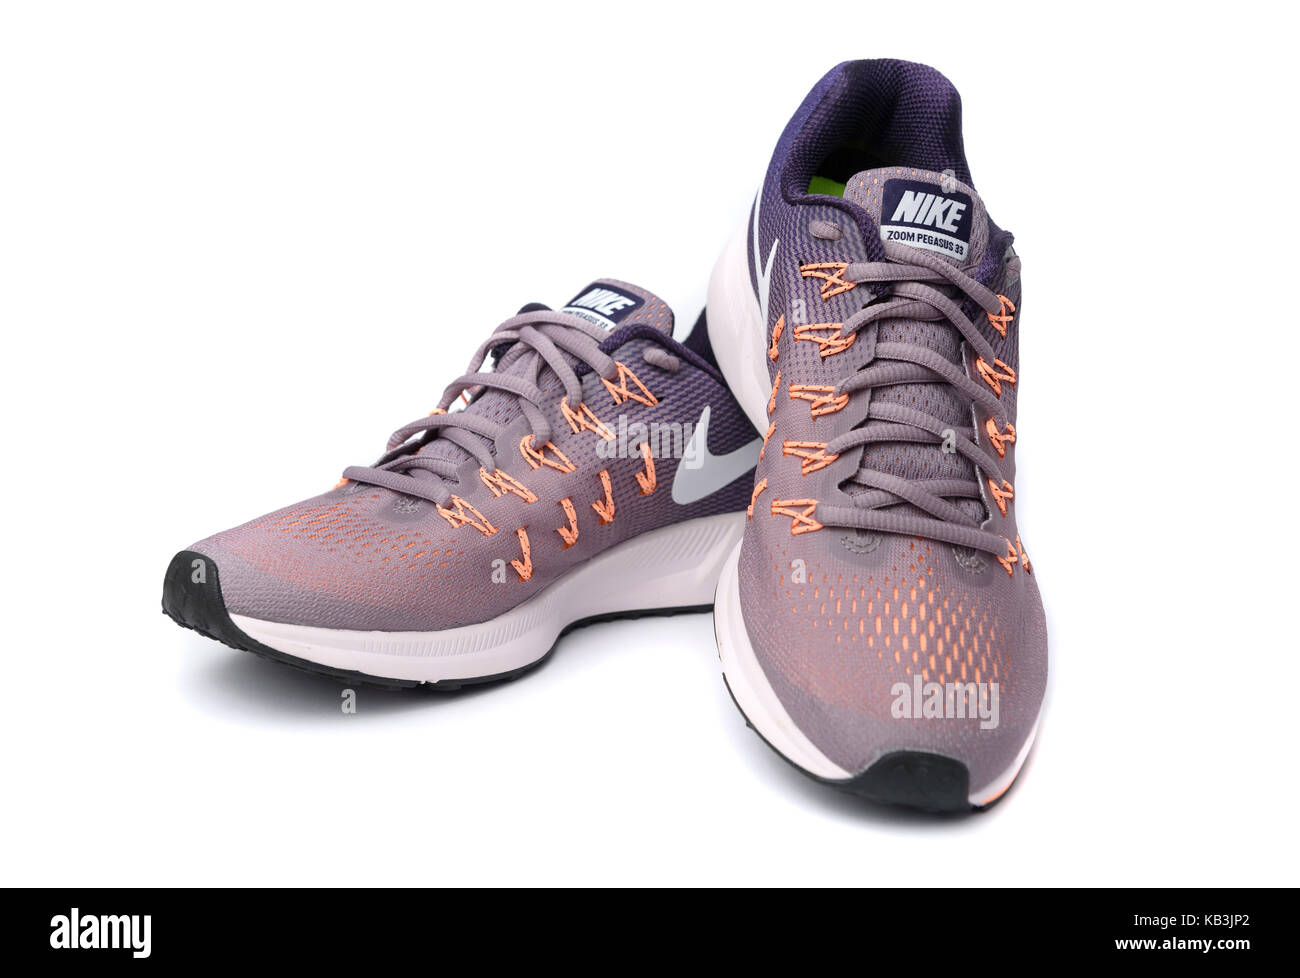 Viola e arancione Nike Pegasus 33 scarpe running intaglio isolato su sfondo bianco Foto Stock